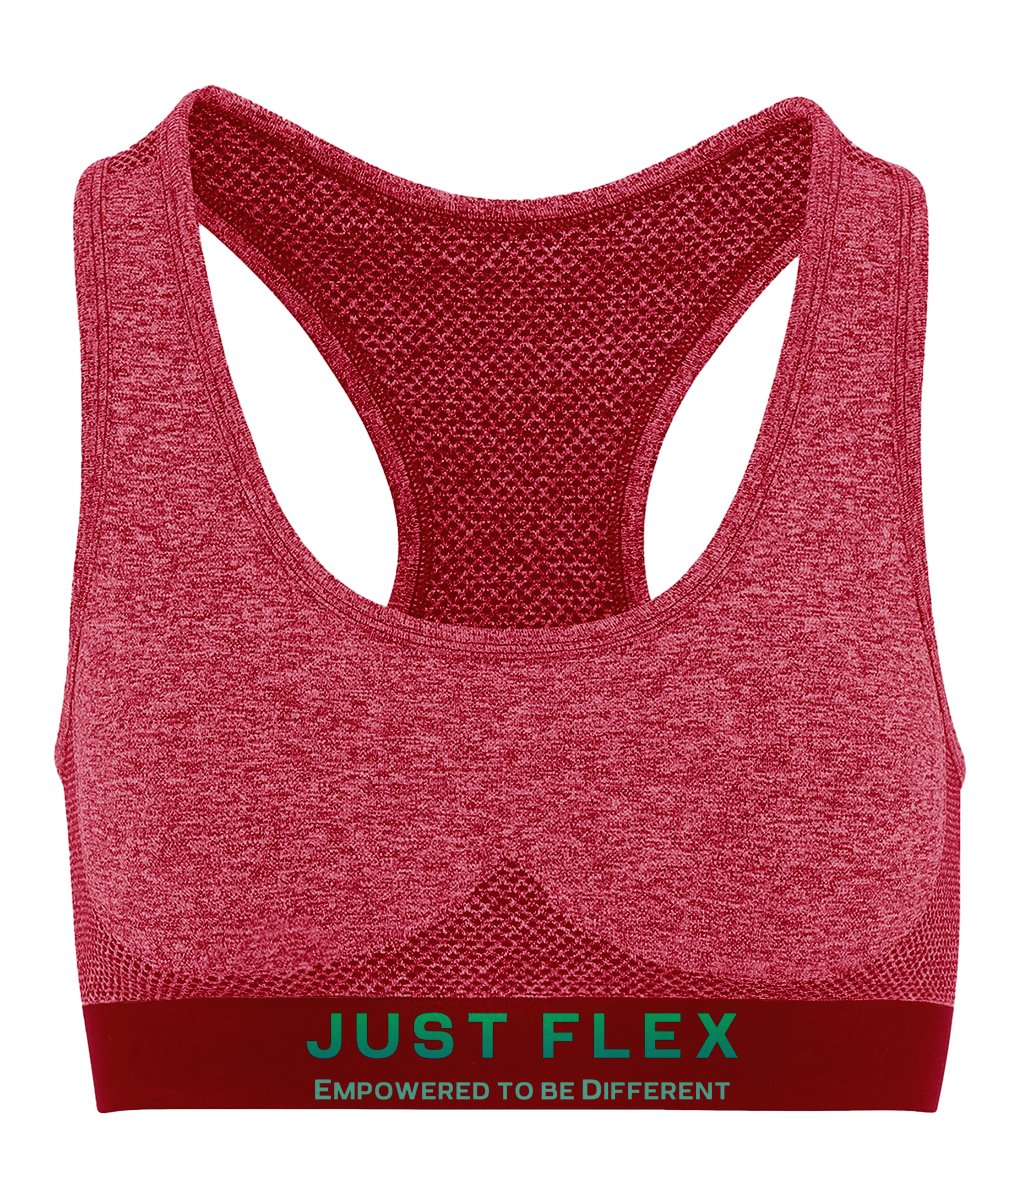 Just Flex - Empowered To Be Different - Womens TriDri® Seamless '3D fit' Sports Bra - Just Flex